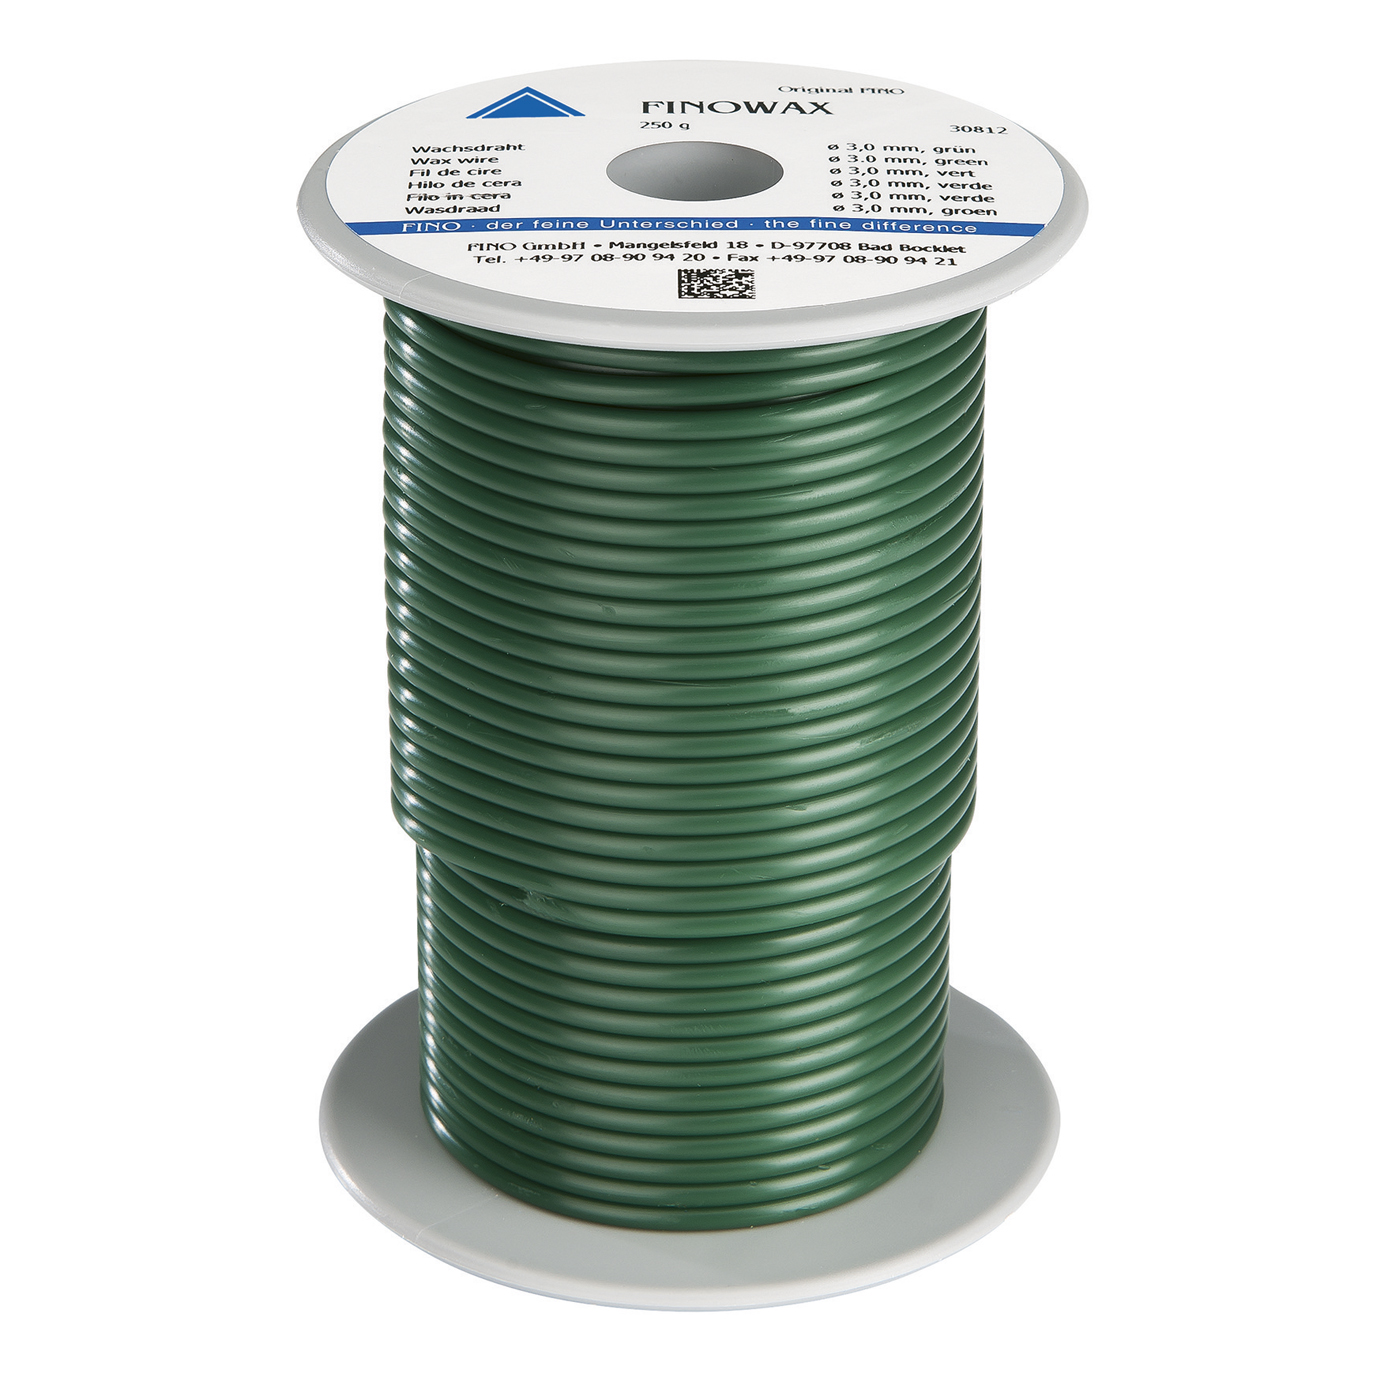 FINOWAX Wax Wire, ø 3.0 mm, Medium Hard, Green - 250 g